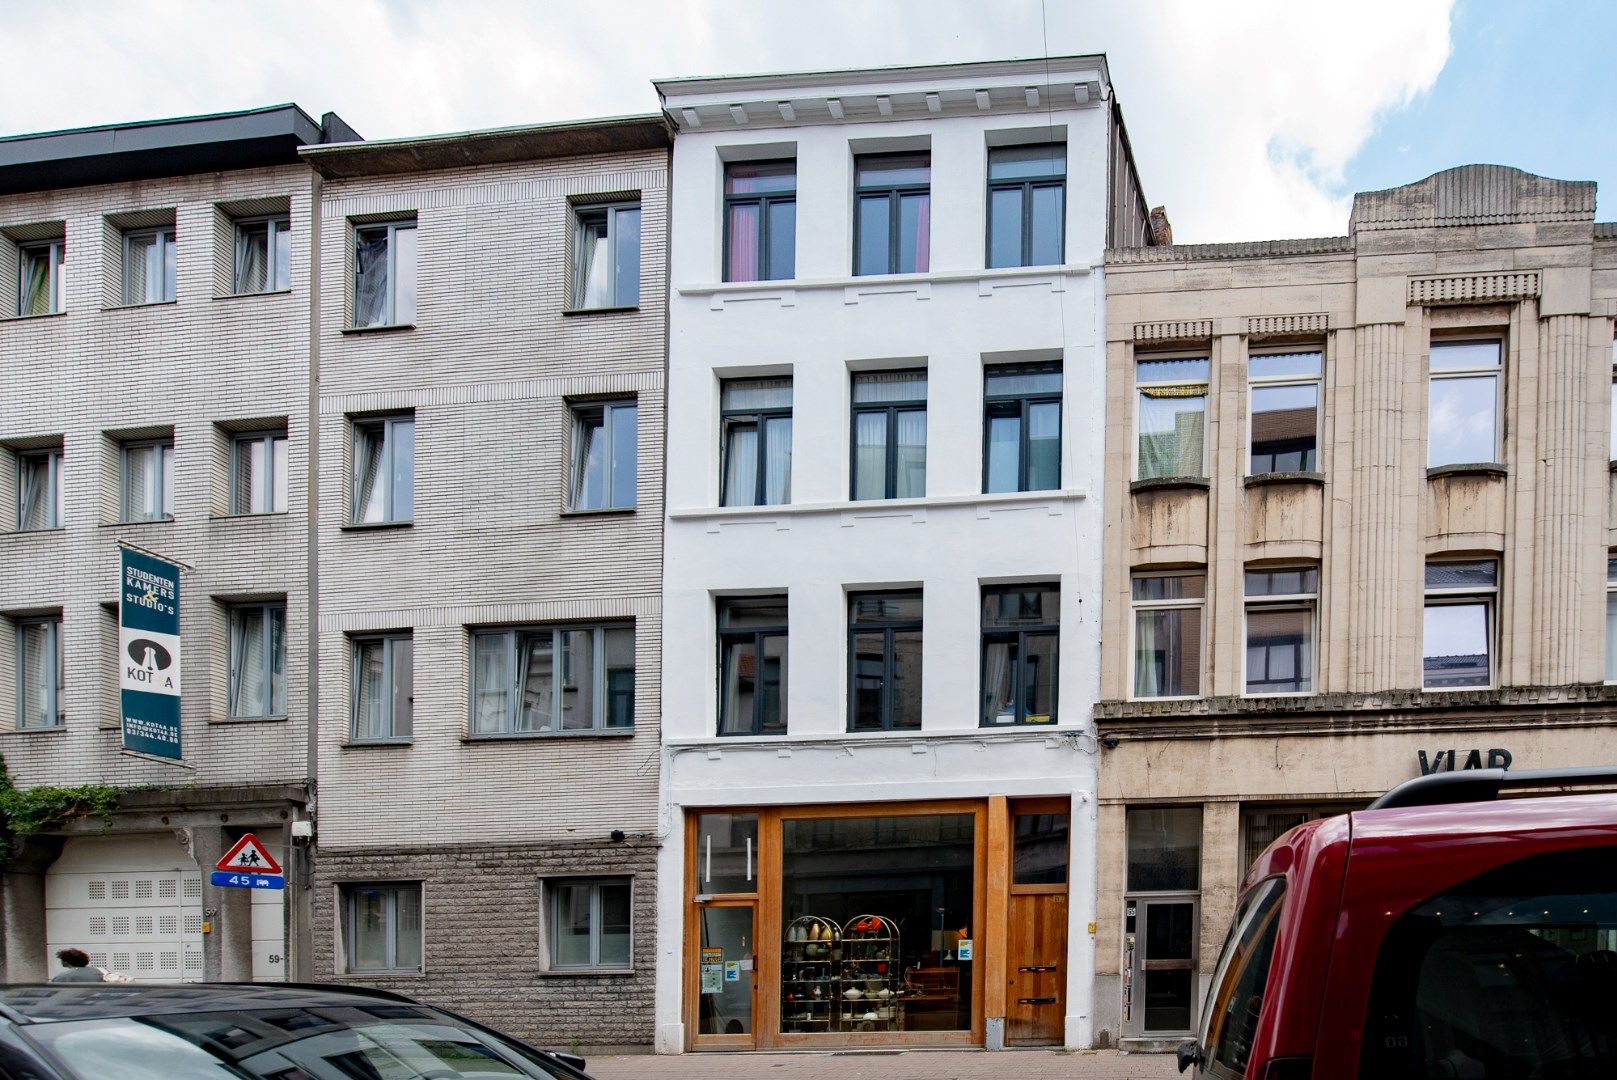 Commerciële ruimte te koop Kloosterstraat 63 - - 2000 Antwerpen